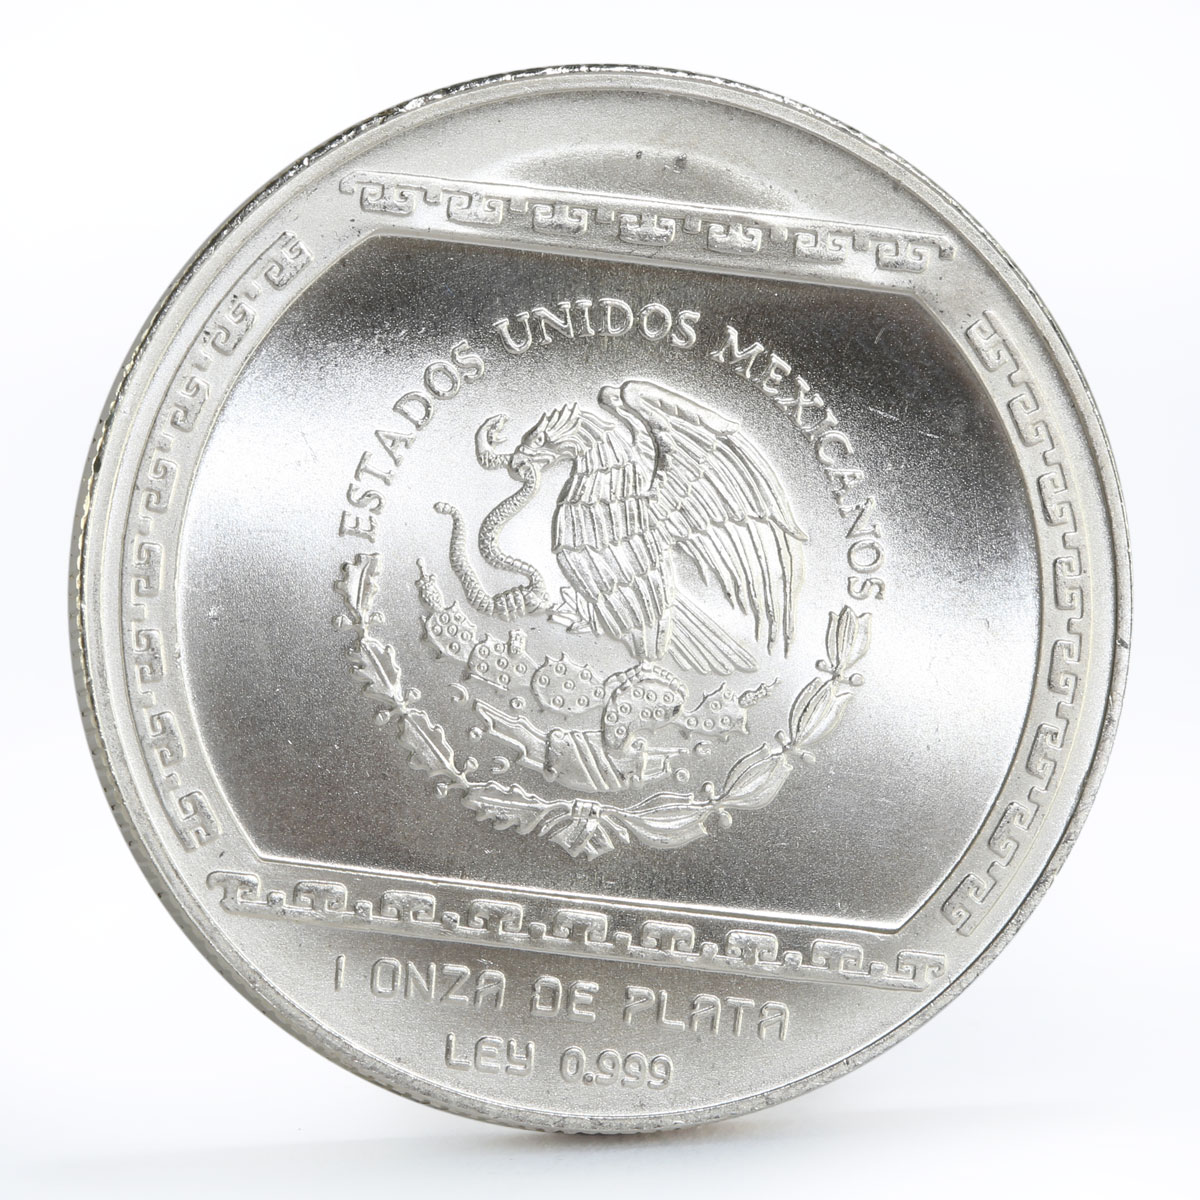 Mexico 5 pesos Precolombina series Bajo de el Tajin silver coin 1993